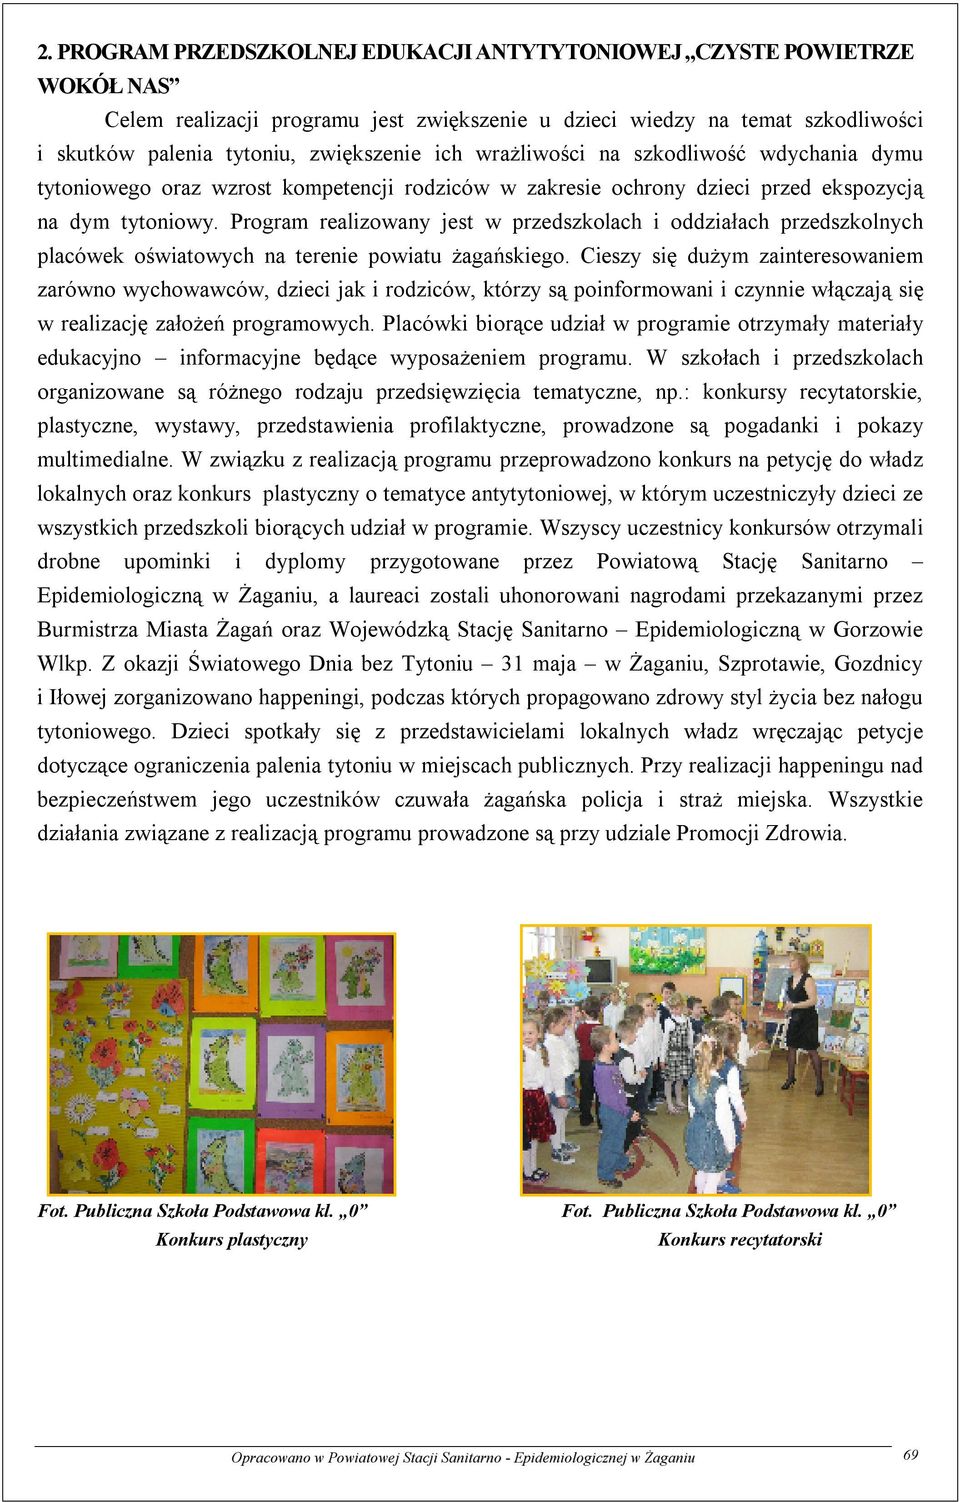 Program realizowany jest w przedszkolach i oddziałach przedszkolnych placówek oświatowych na terenie powiatu żagańskiego.